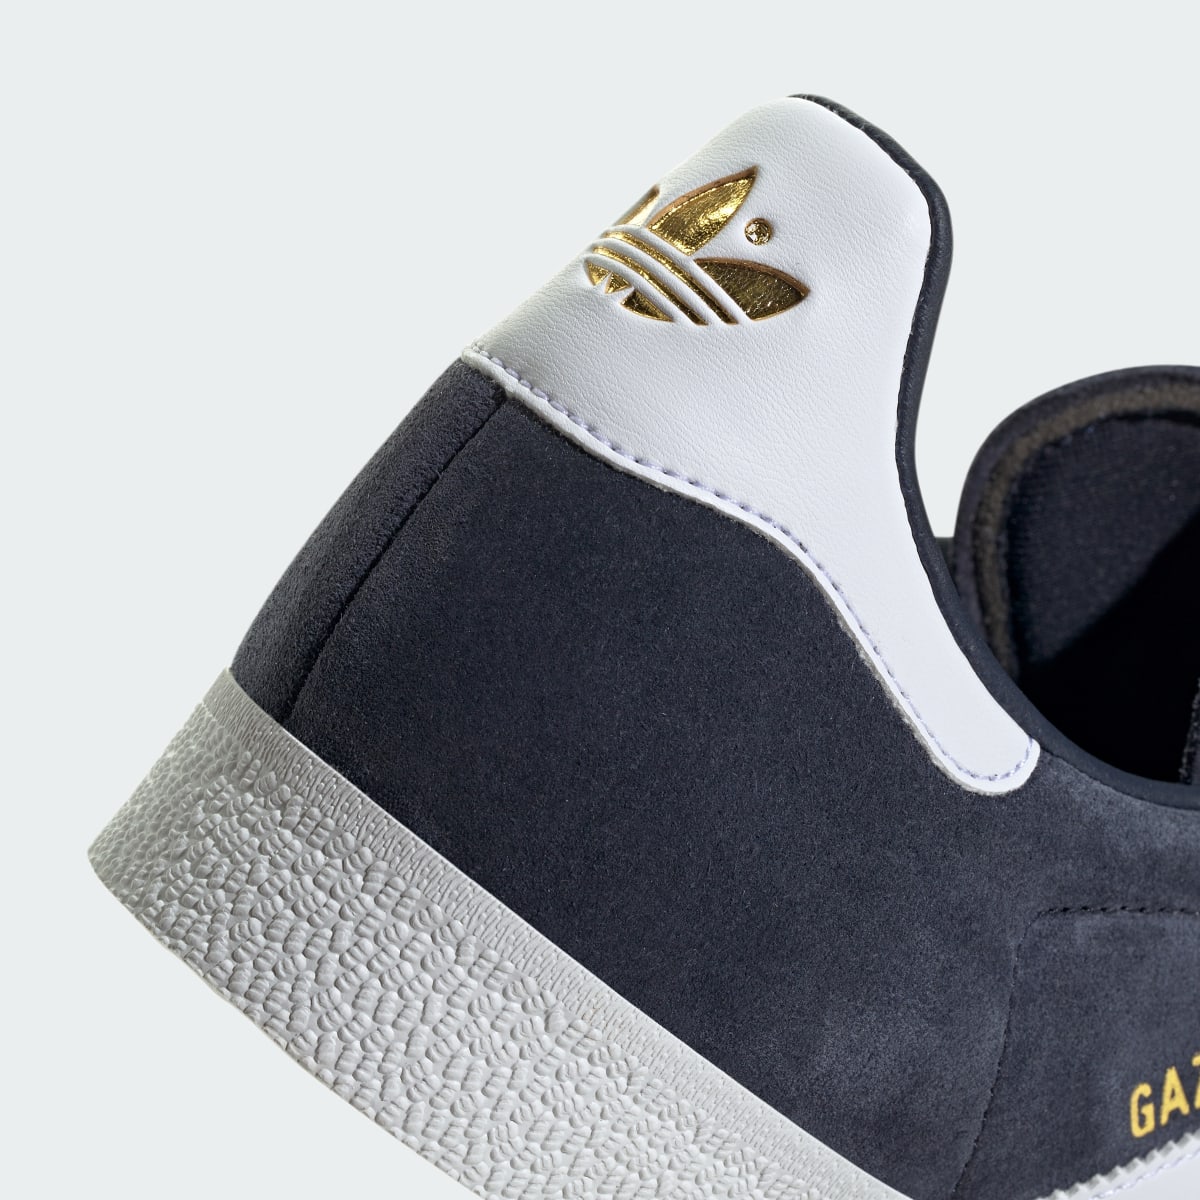 Adidas Buty Gazelle. 10